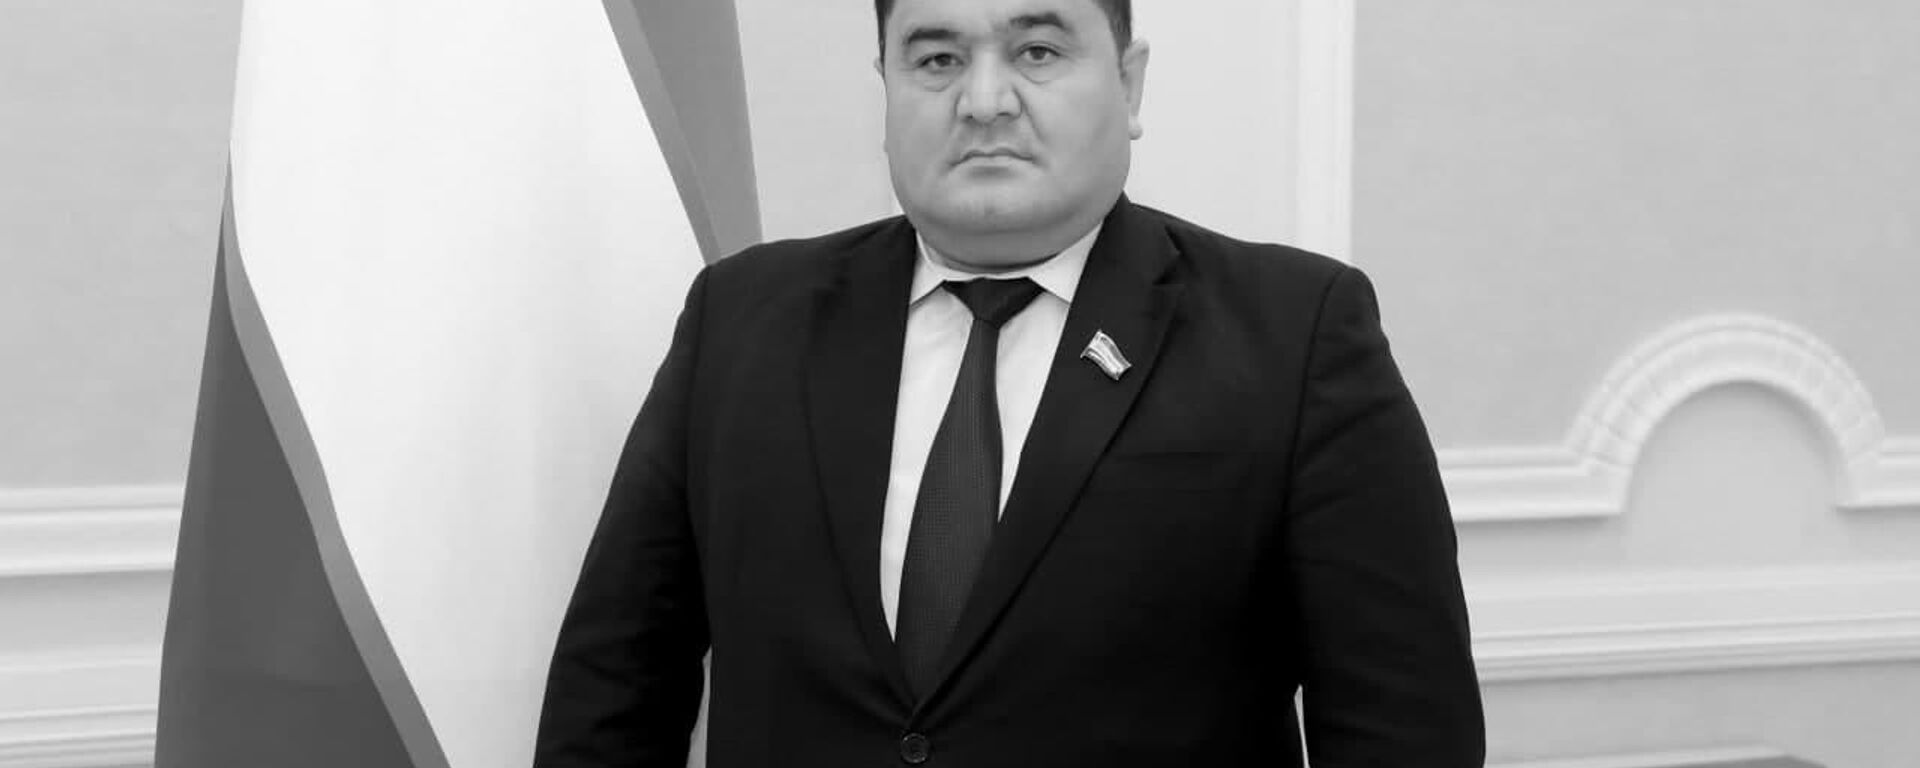 Депутат Законодательной палаты Абдурахим Курбонов - Sputnik Узбекистан, 1920, 08.07.2021